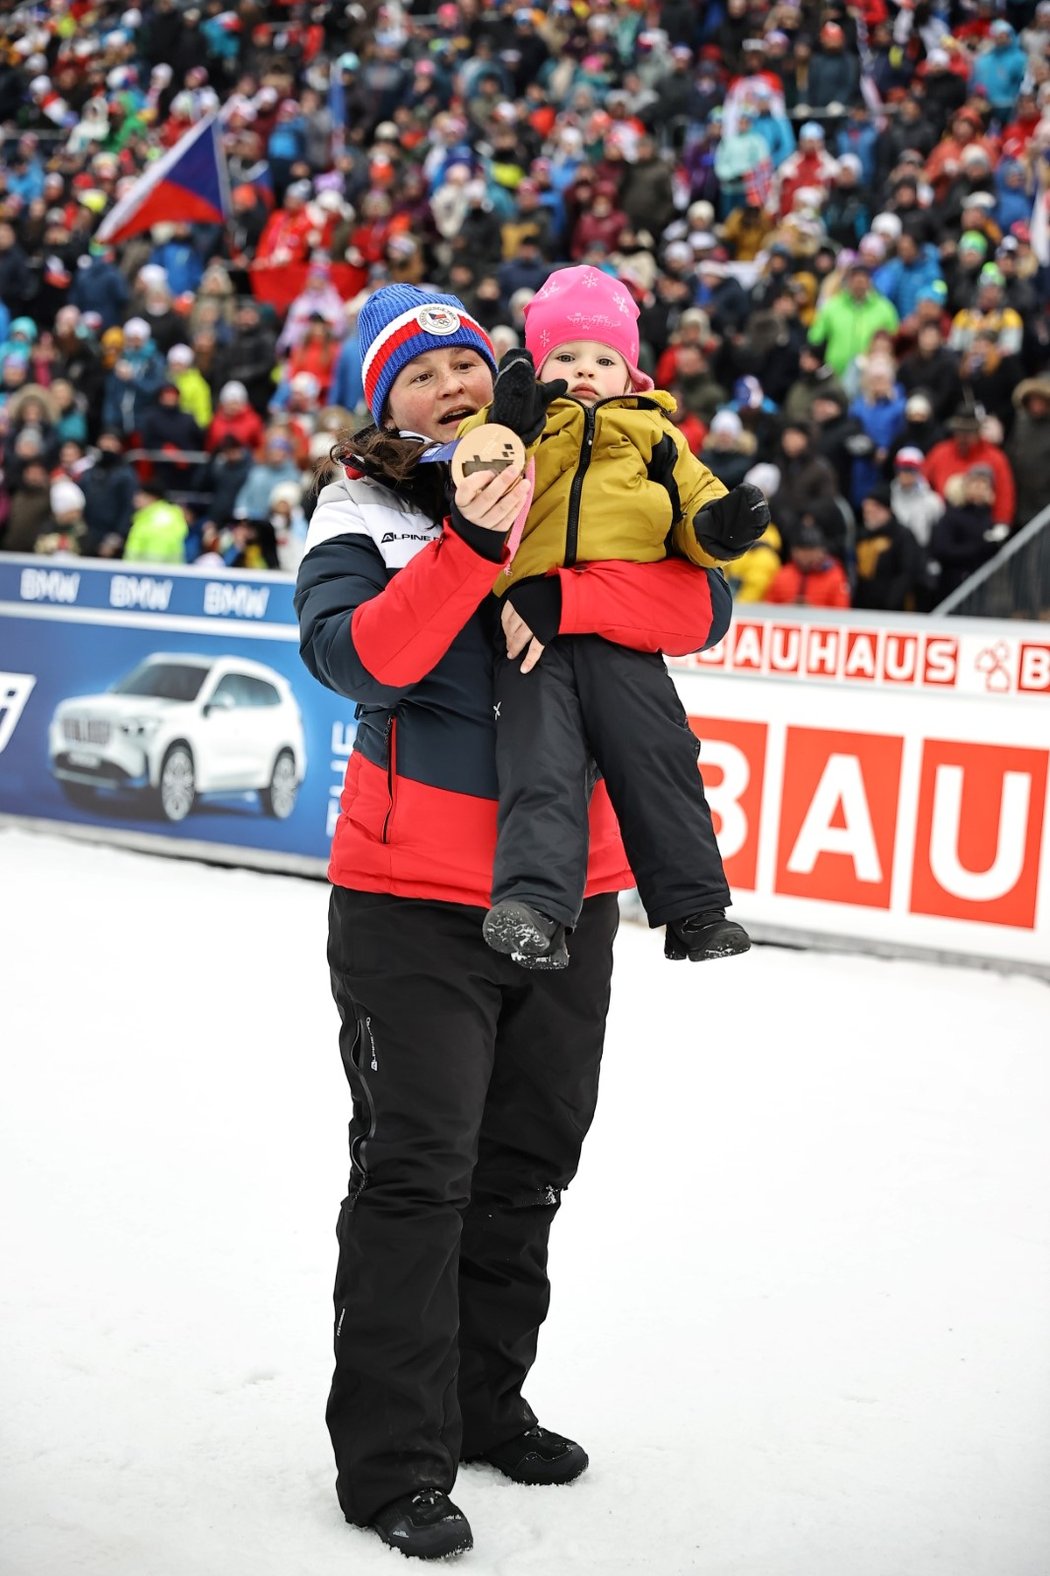 Druhé těhotenství Veronika vyplulo napovrch během akce, kde biatlonostiky dostaly bronzové medaile za Soči 2014